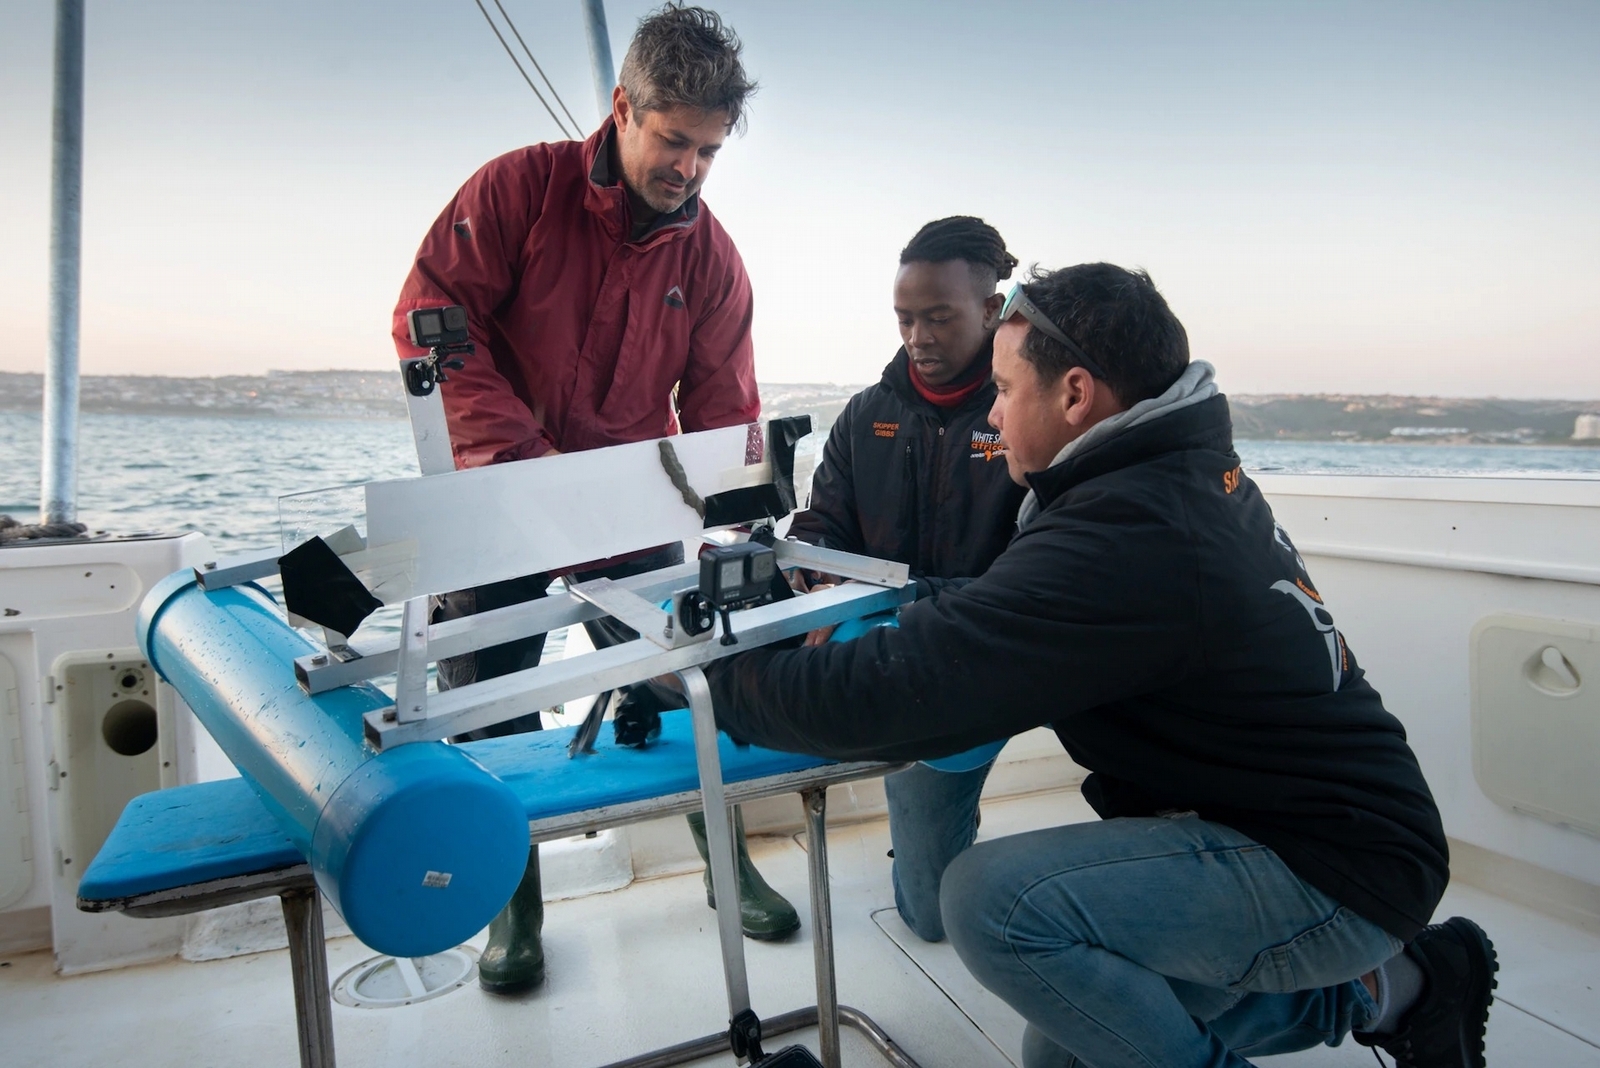 萊恩．強生（Ryan Johnson）、吉布斯．庫古魯和一位同事在檢查即將下水的浪橇，這將作為鯊魚在實驗中的休息之處。PHOTOGRAPHS BY FIONA AYERST, NATIONAL GEOGRAPHIC